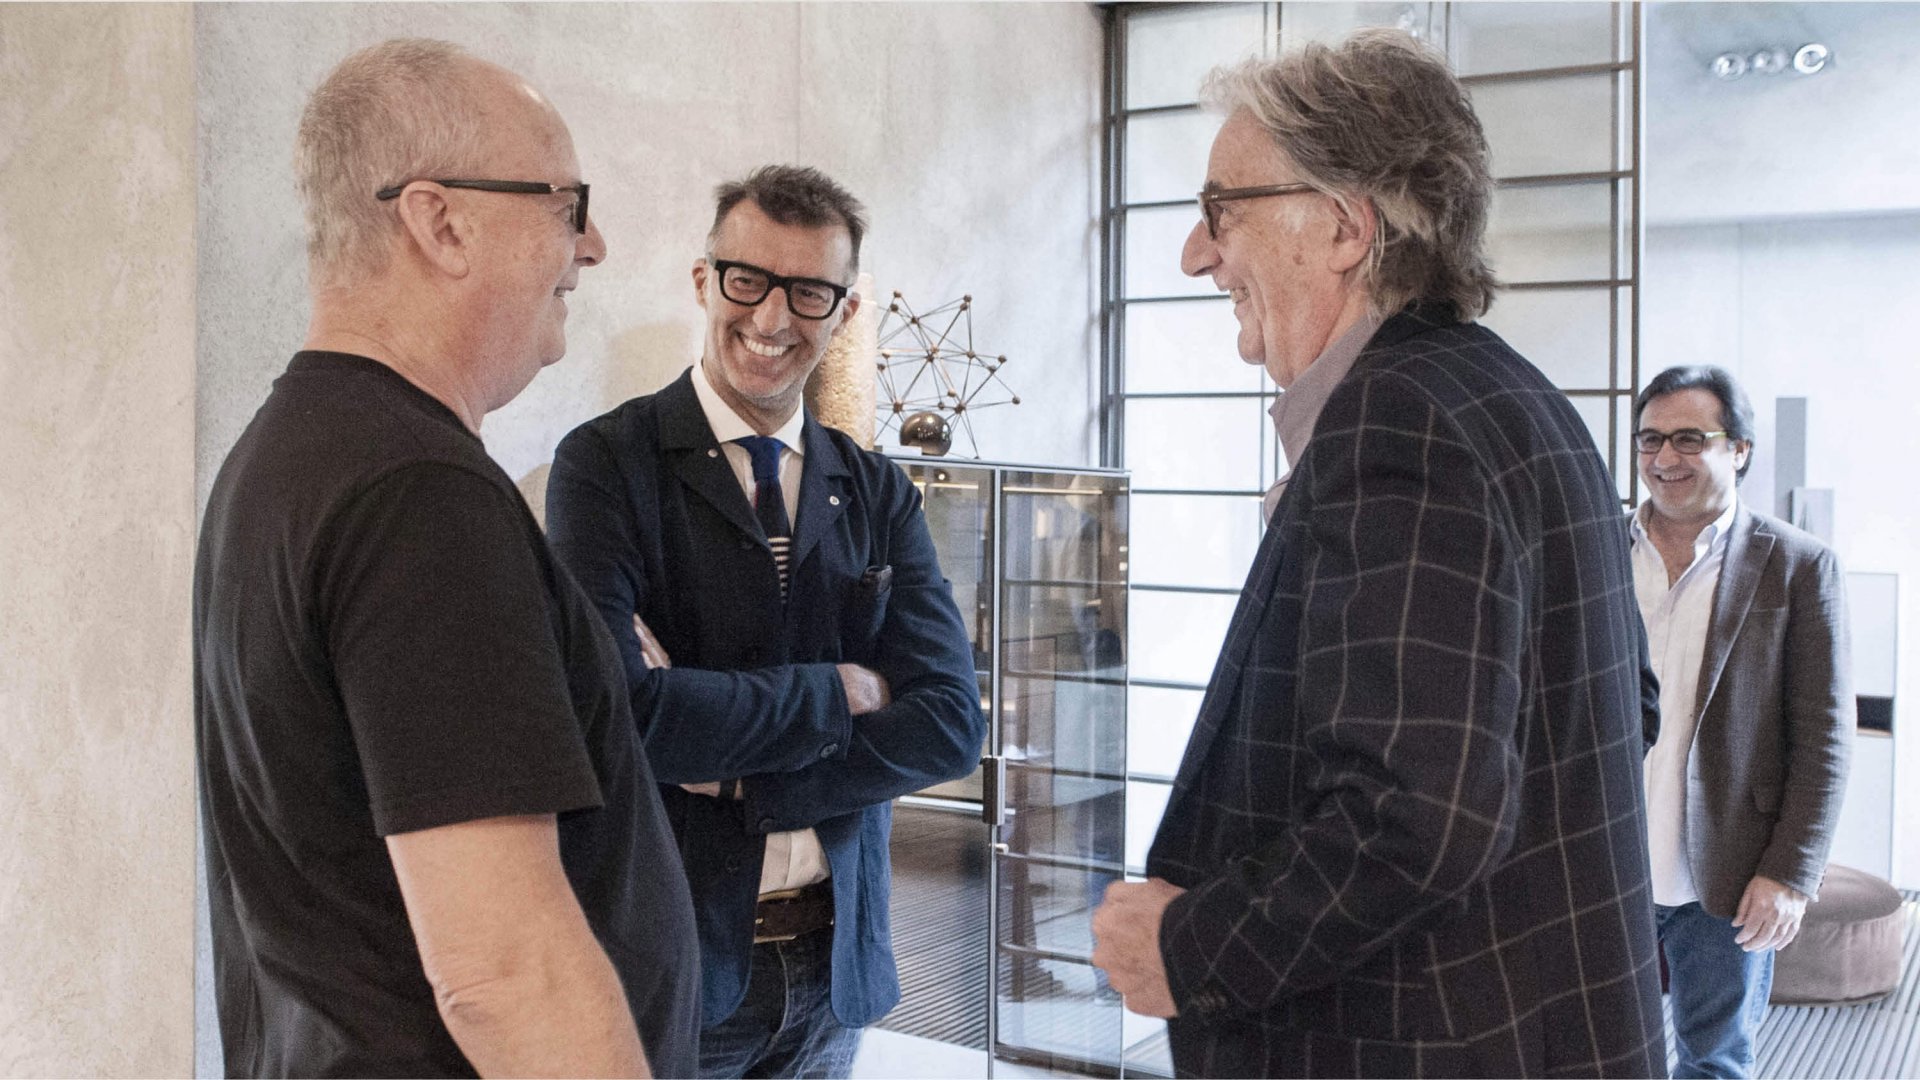 Alberto Alessi, entrepreneur; Michele Lupi, Icon and Icon Design director; Sir Paul Smith, fashion designer